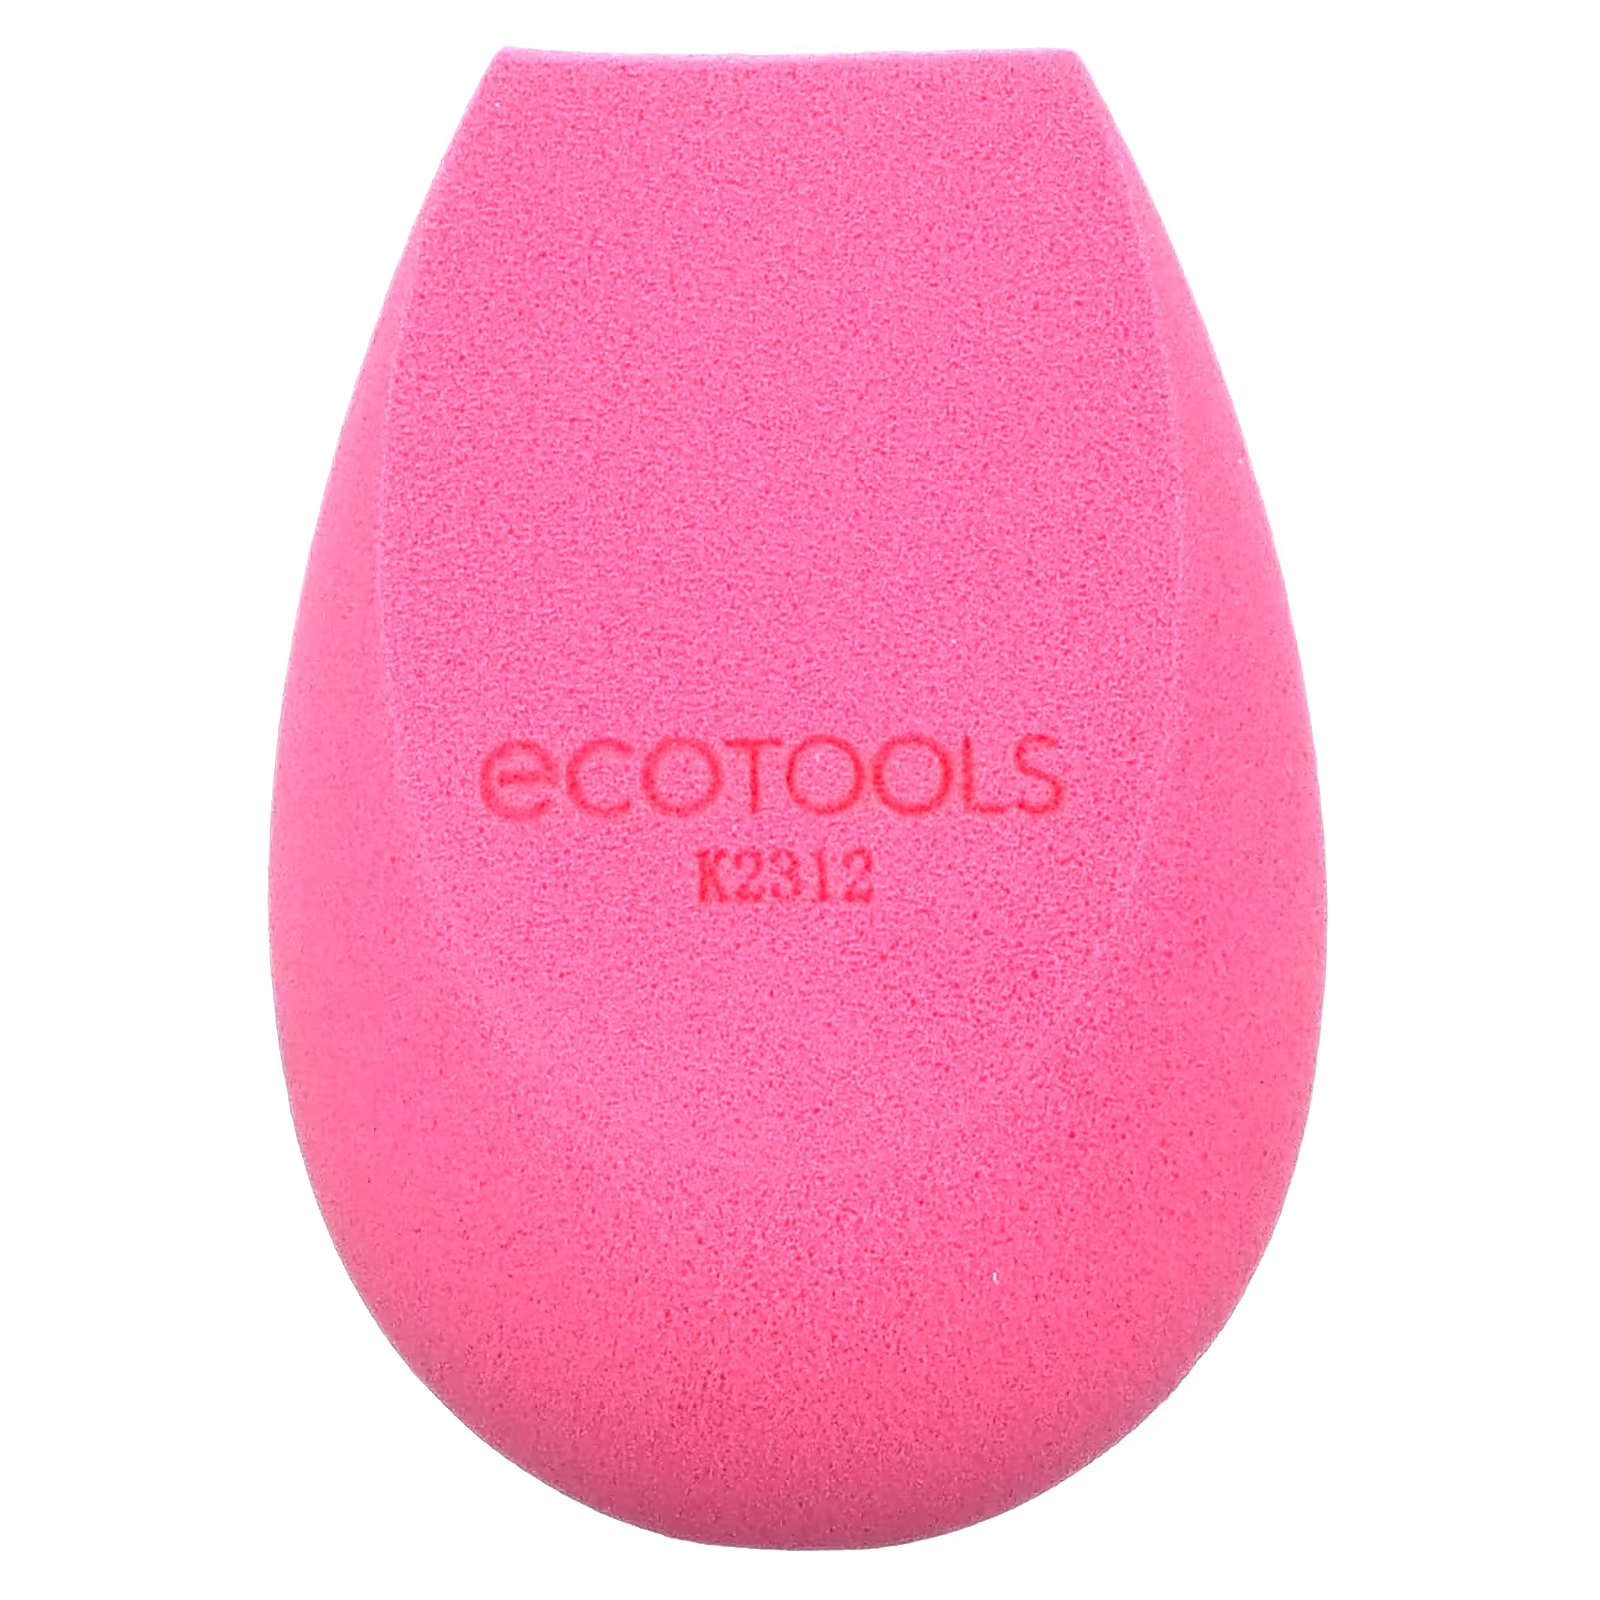 Спонж для макияжа EcoTools Bioblender, розвоый ecotools brighter tomorrow набор bioblender 3 губки очищающее средство 4 предмета